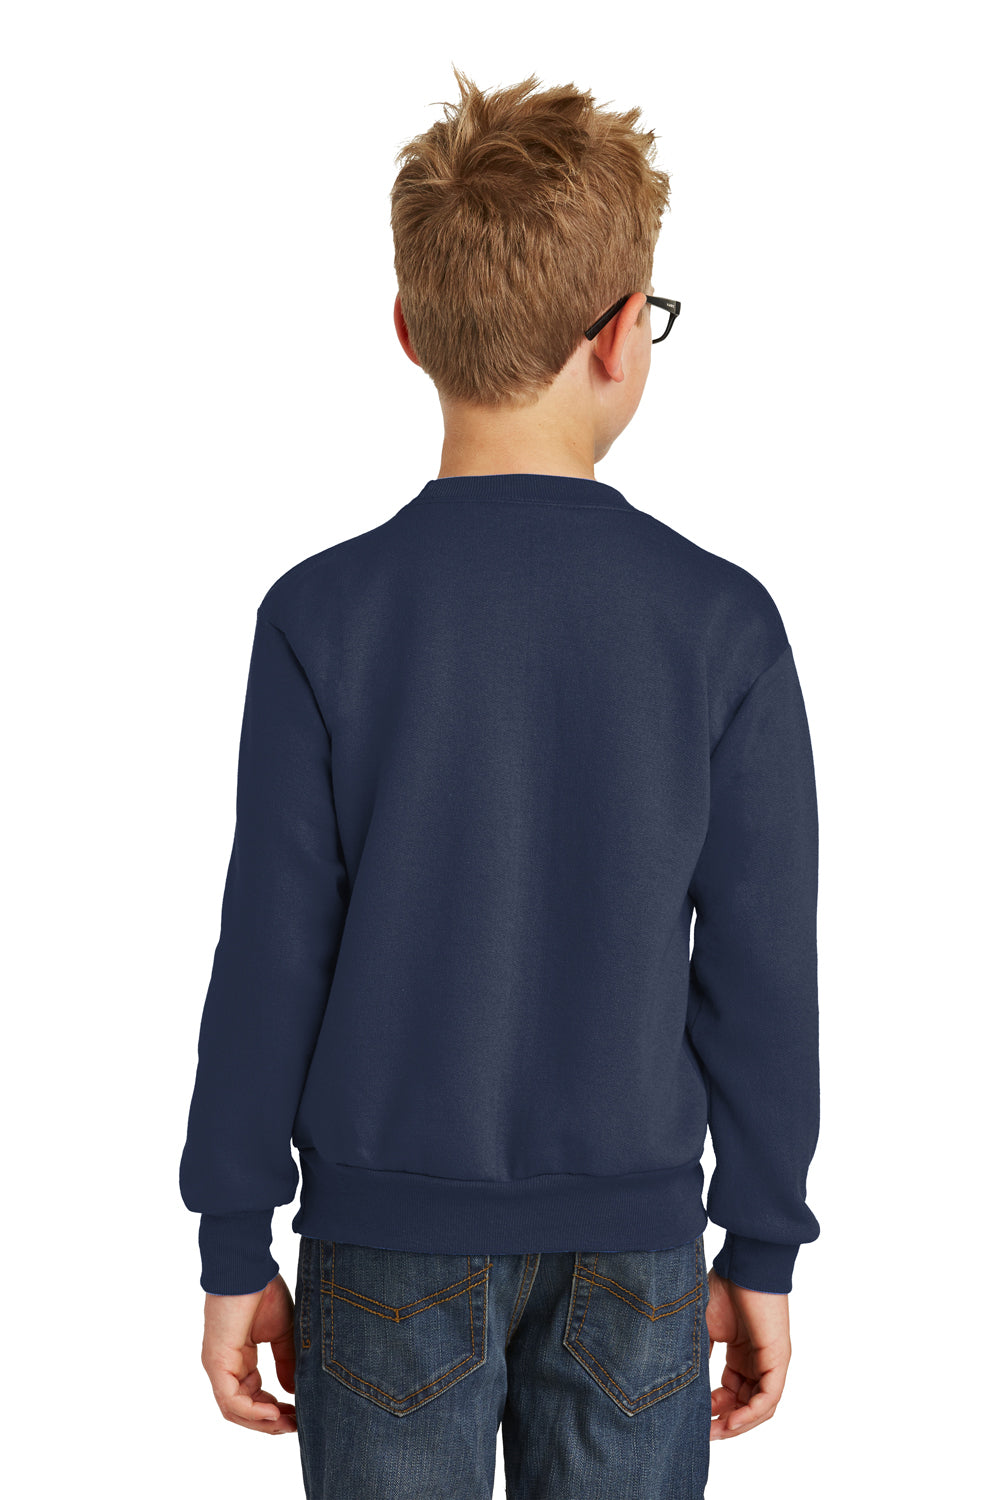 Port & Company PC90Y Youth Core Fleece Crewneck Sweatshirt Navy Blue Back